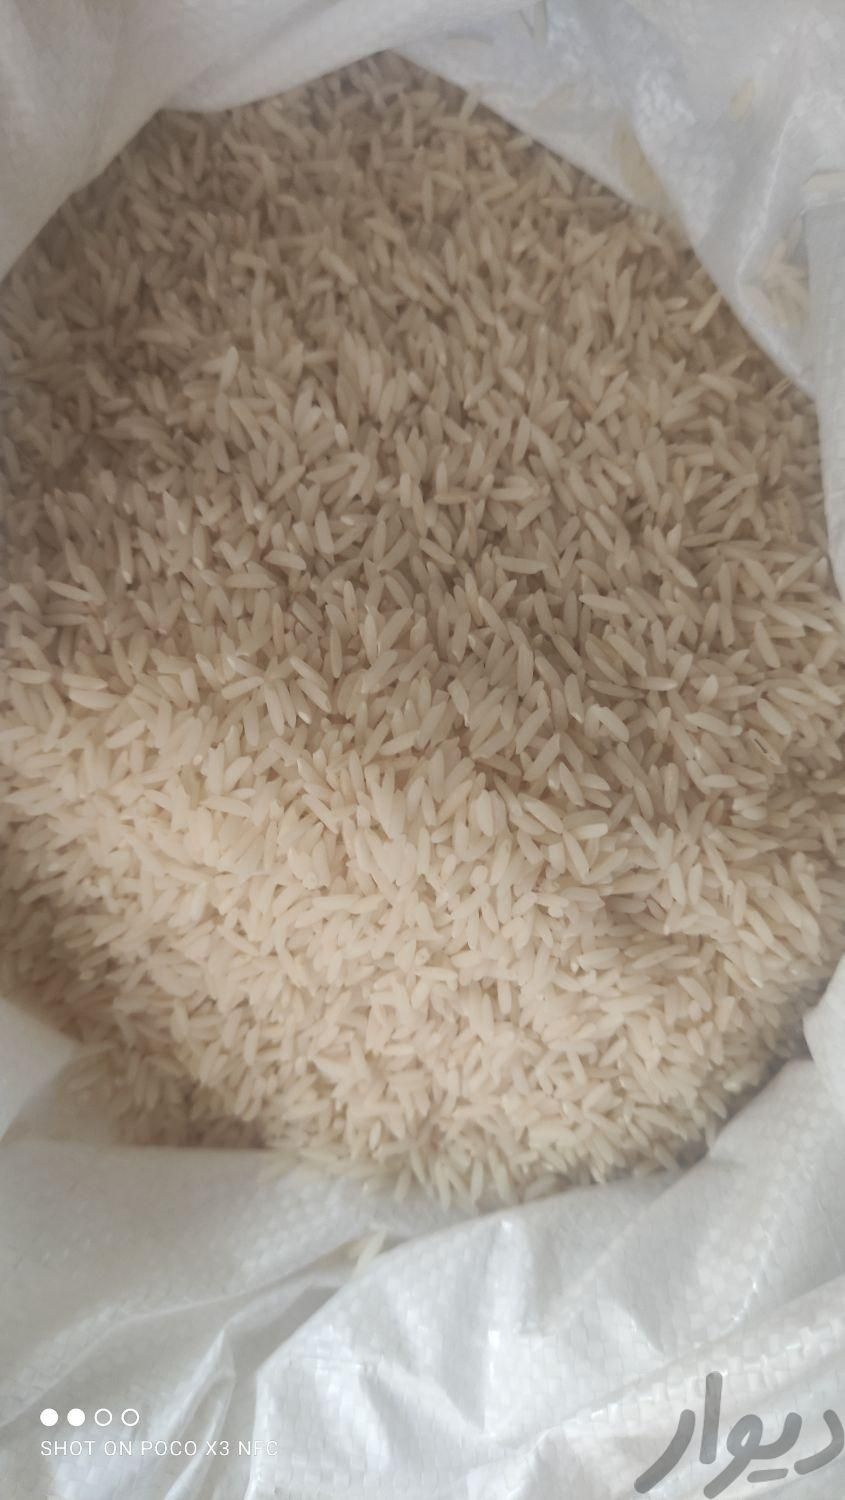 فروش برنج شمال|خوردنی و آشامیدنی|تهران, جوانمرد قصاب|دیوار